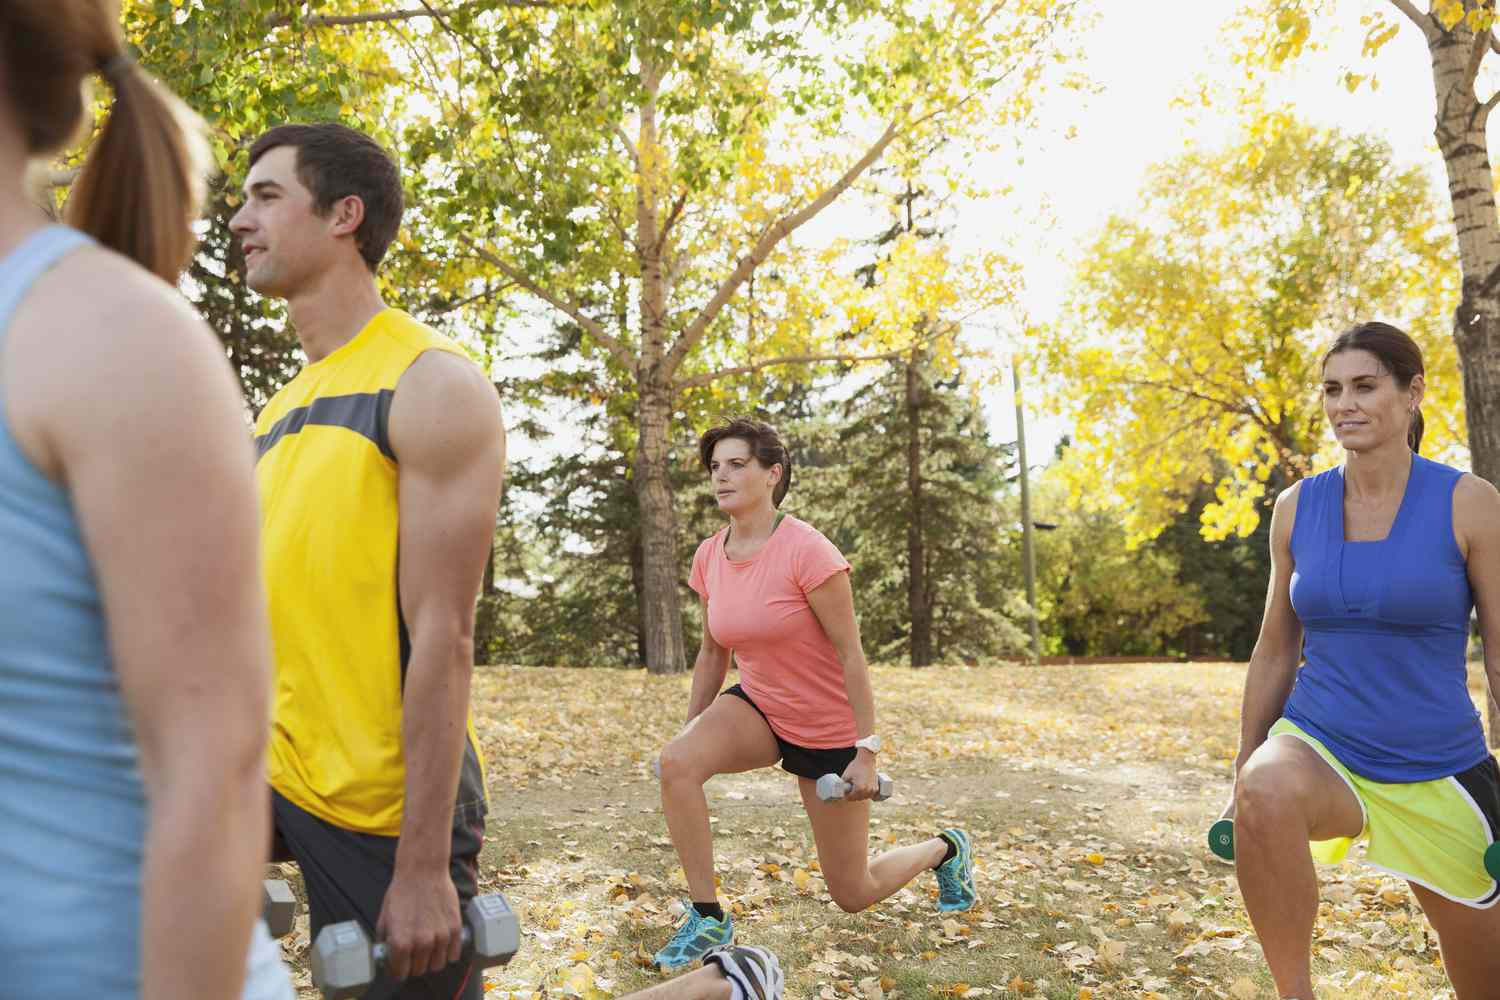 Mensen die gewichten gebruiken tijdens outdoor fitnessles.